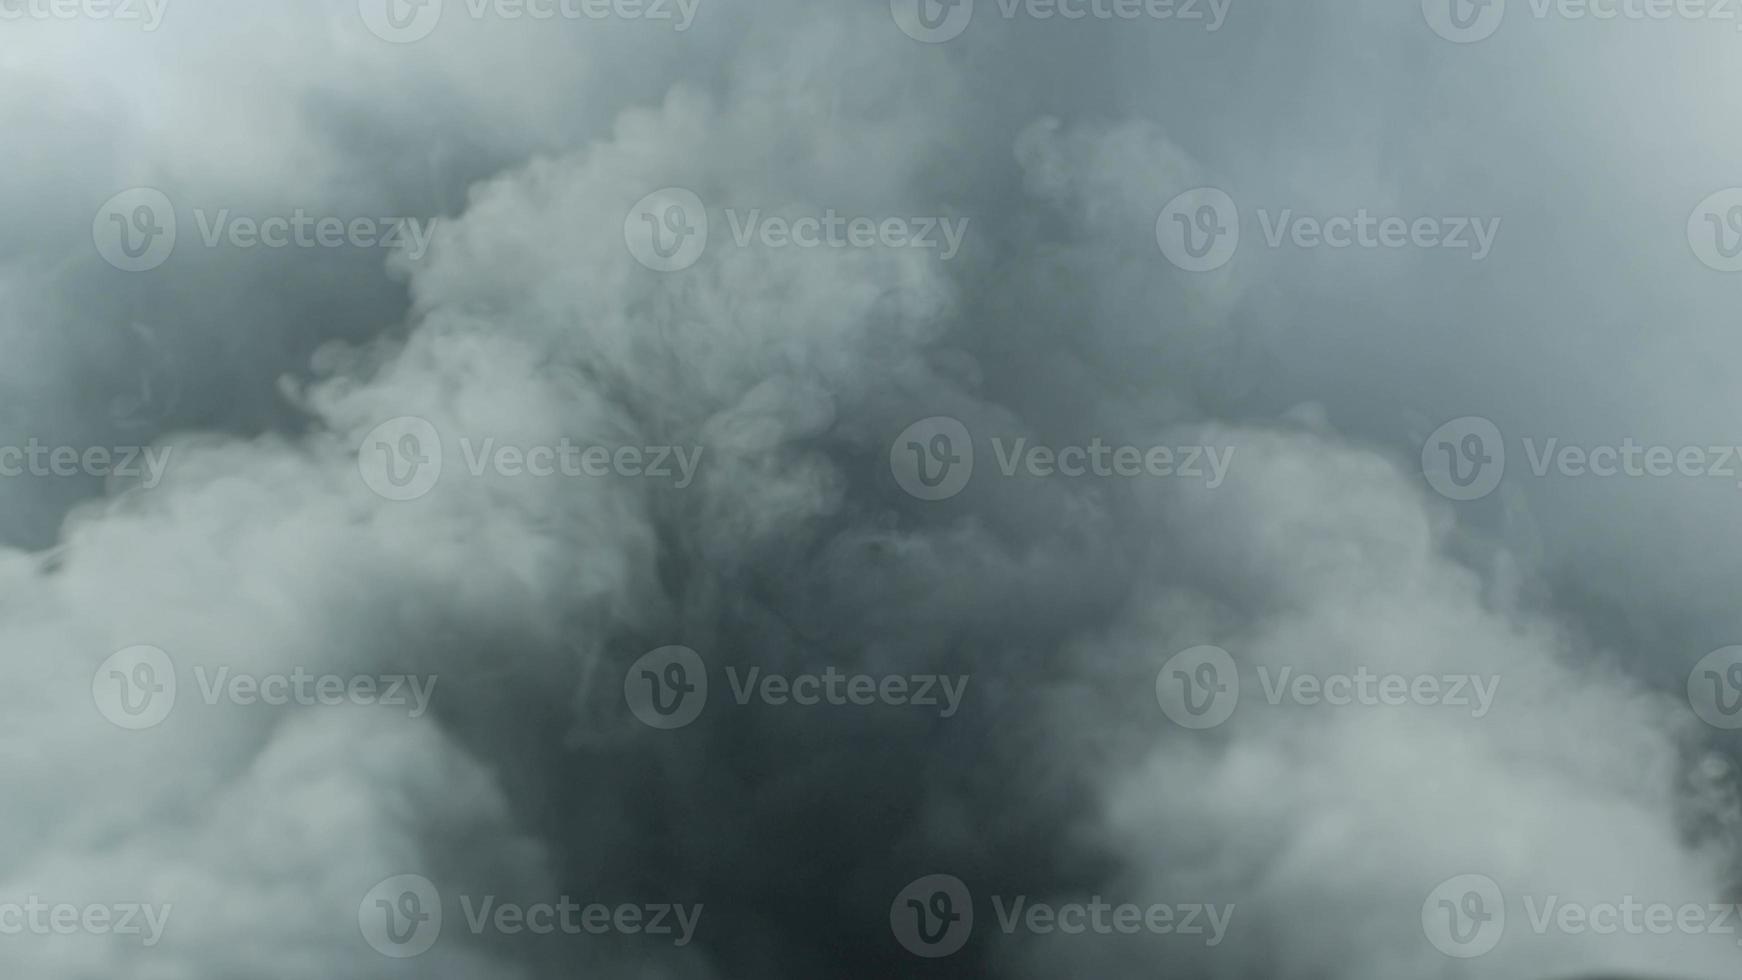 realistiska torris rök moln dimma foto för olika projekt och etc.